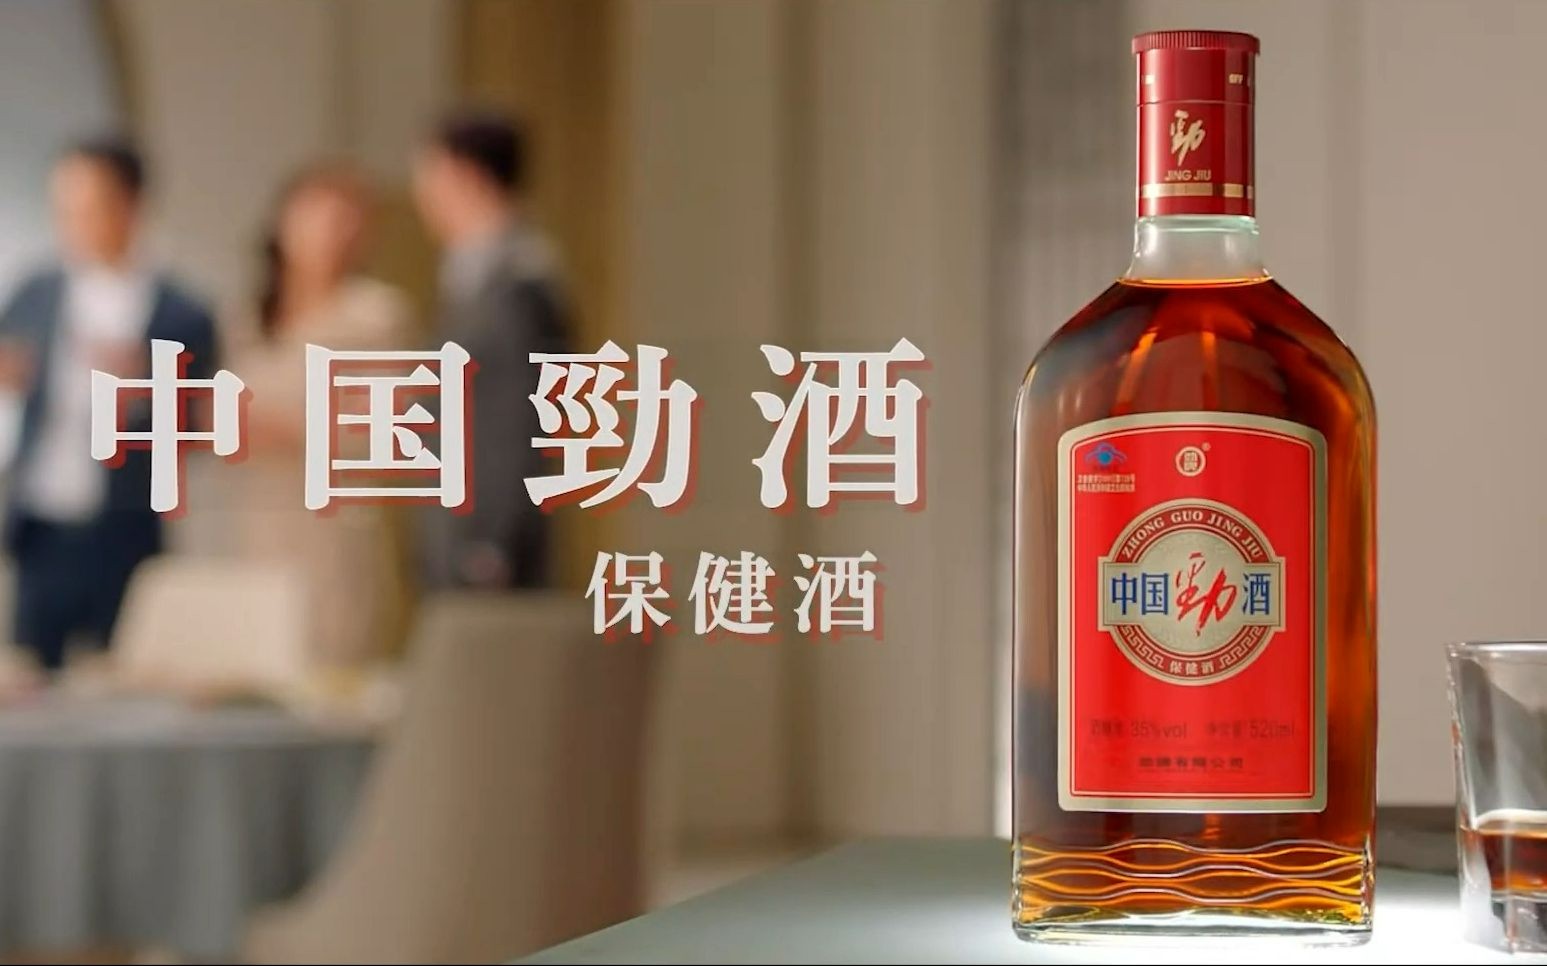 2022年 日和商事(nichiwa shoji)中国劲酒 电视广告 cm 30s 日语